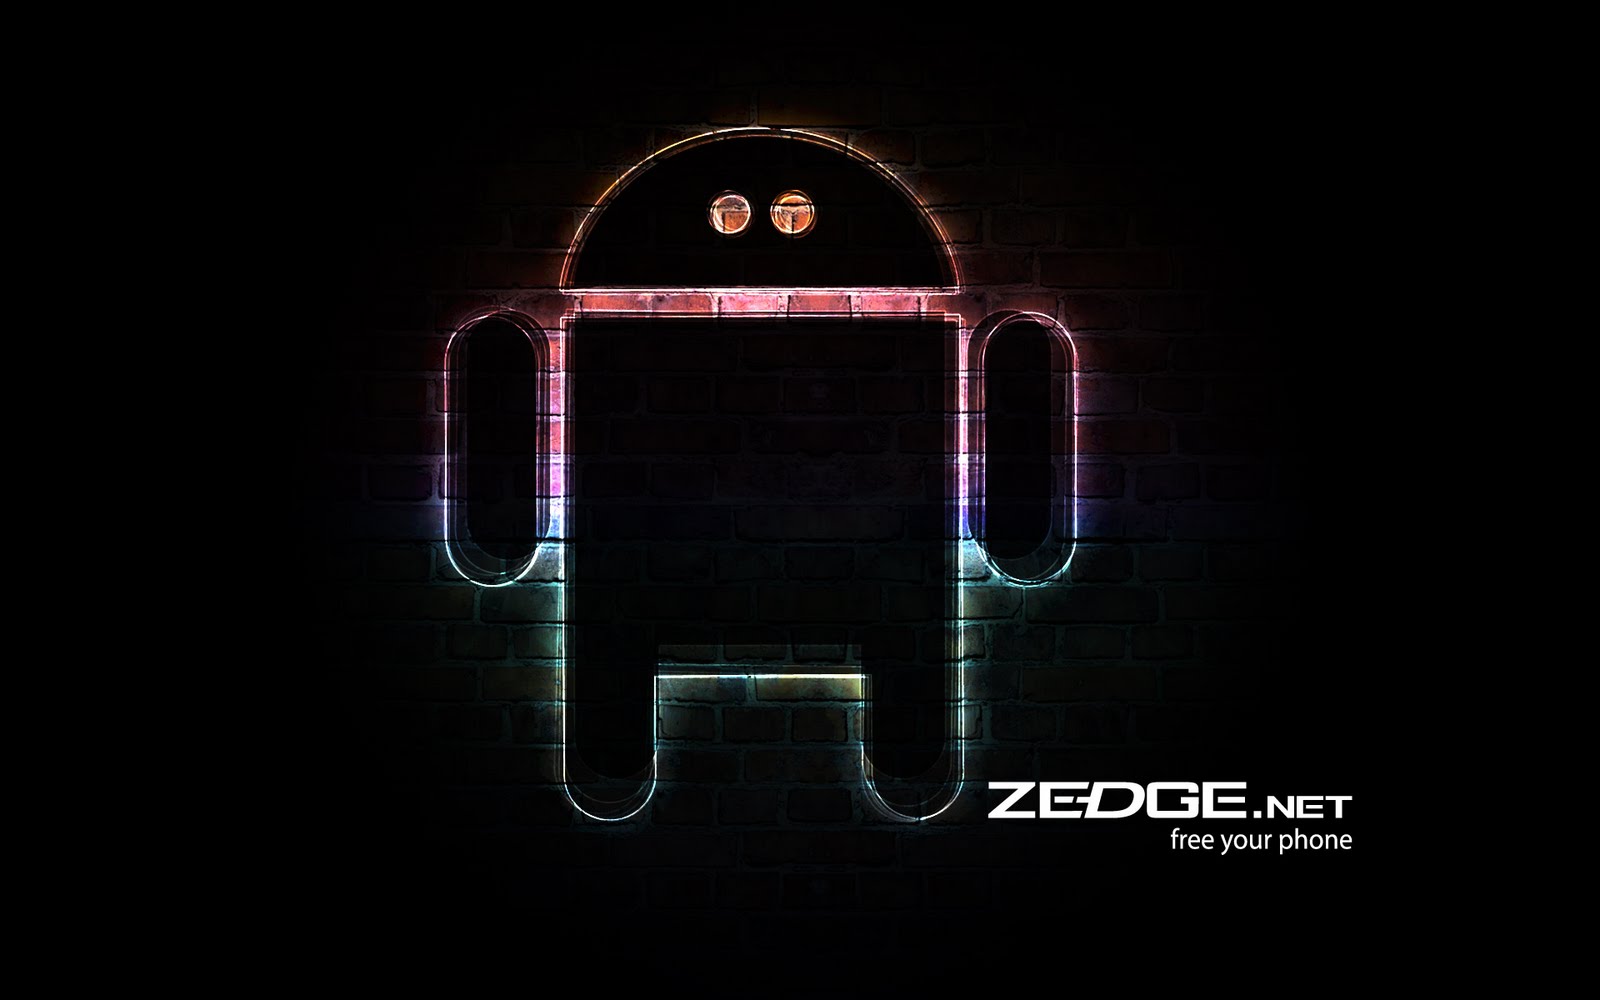 47+] Zedge PC Wallpaper - WallpaperSafari